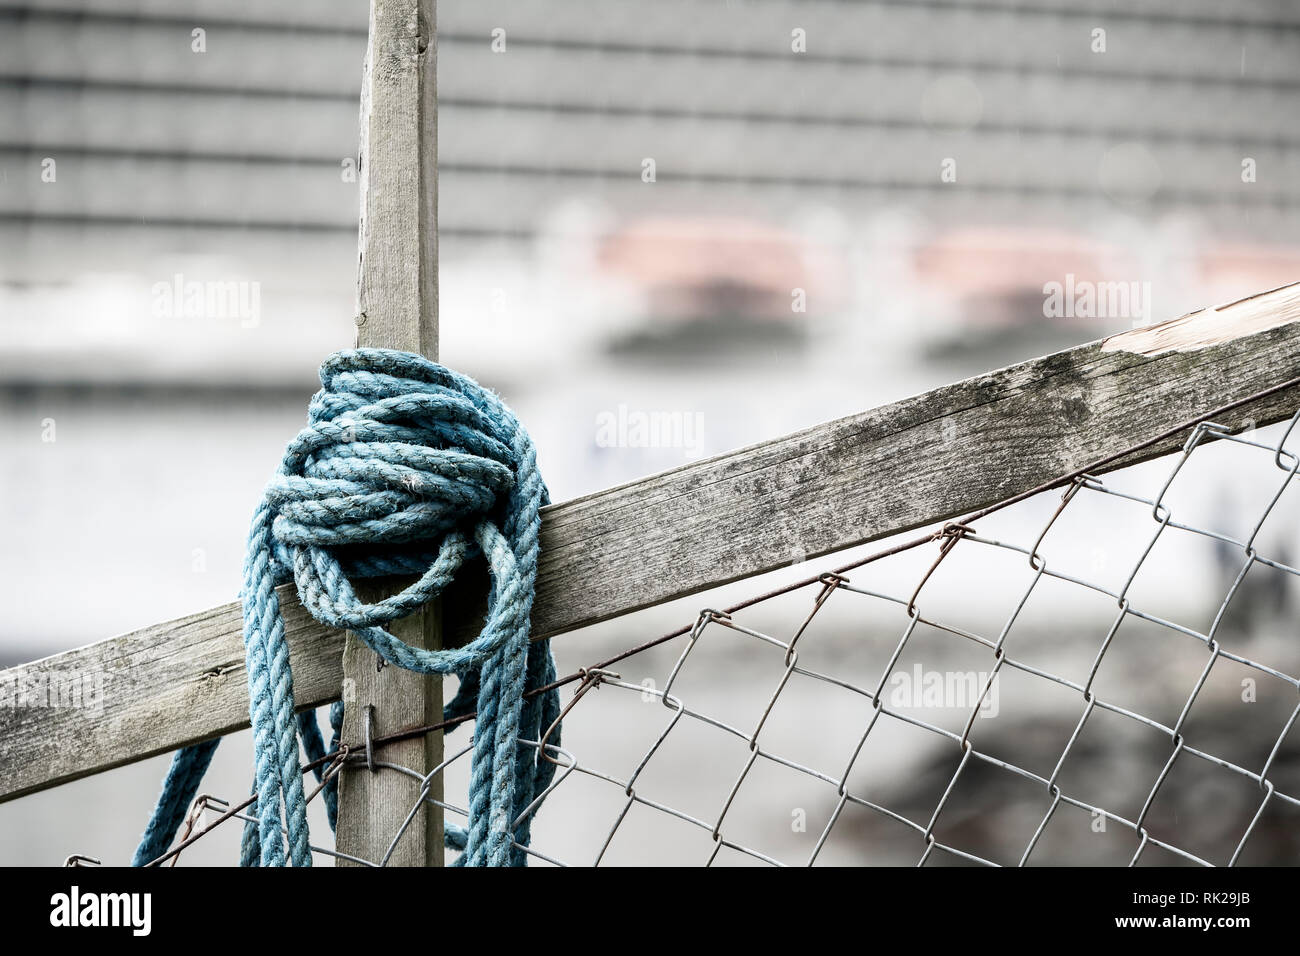 Blau Seil um Holz und Maschendrahtzaun gewickelt, Kreuzfahrt Schiff im Hintergrund Stockfoto